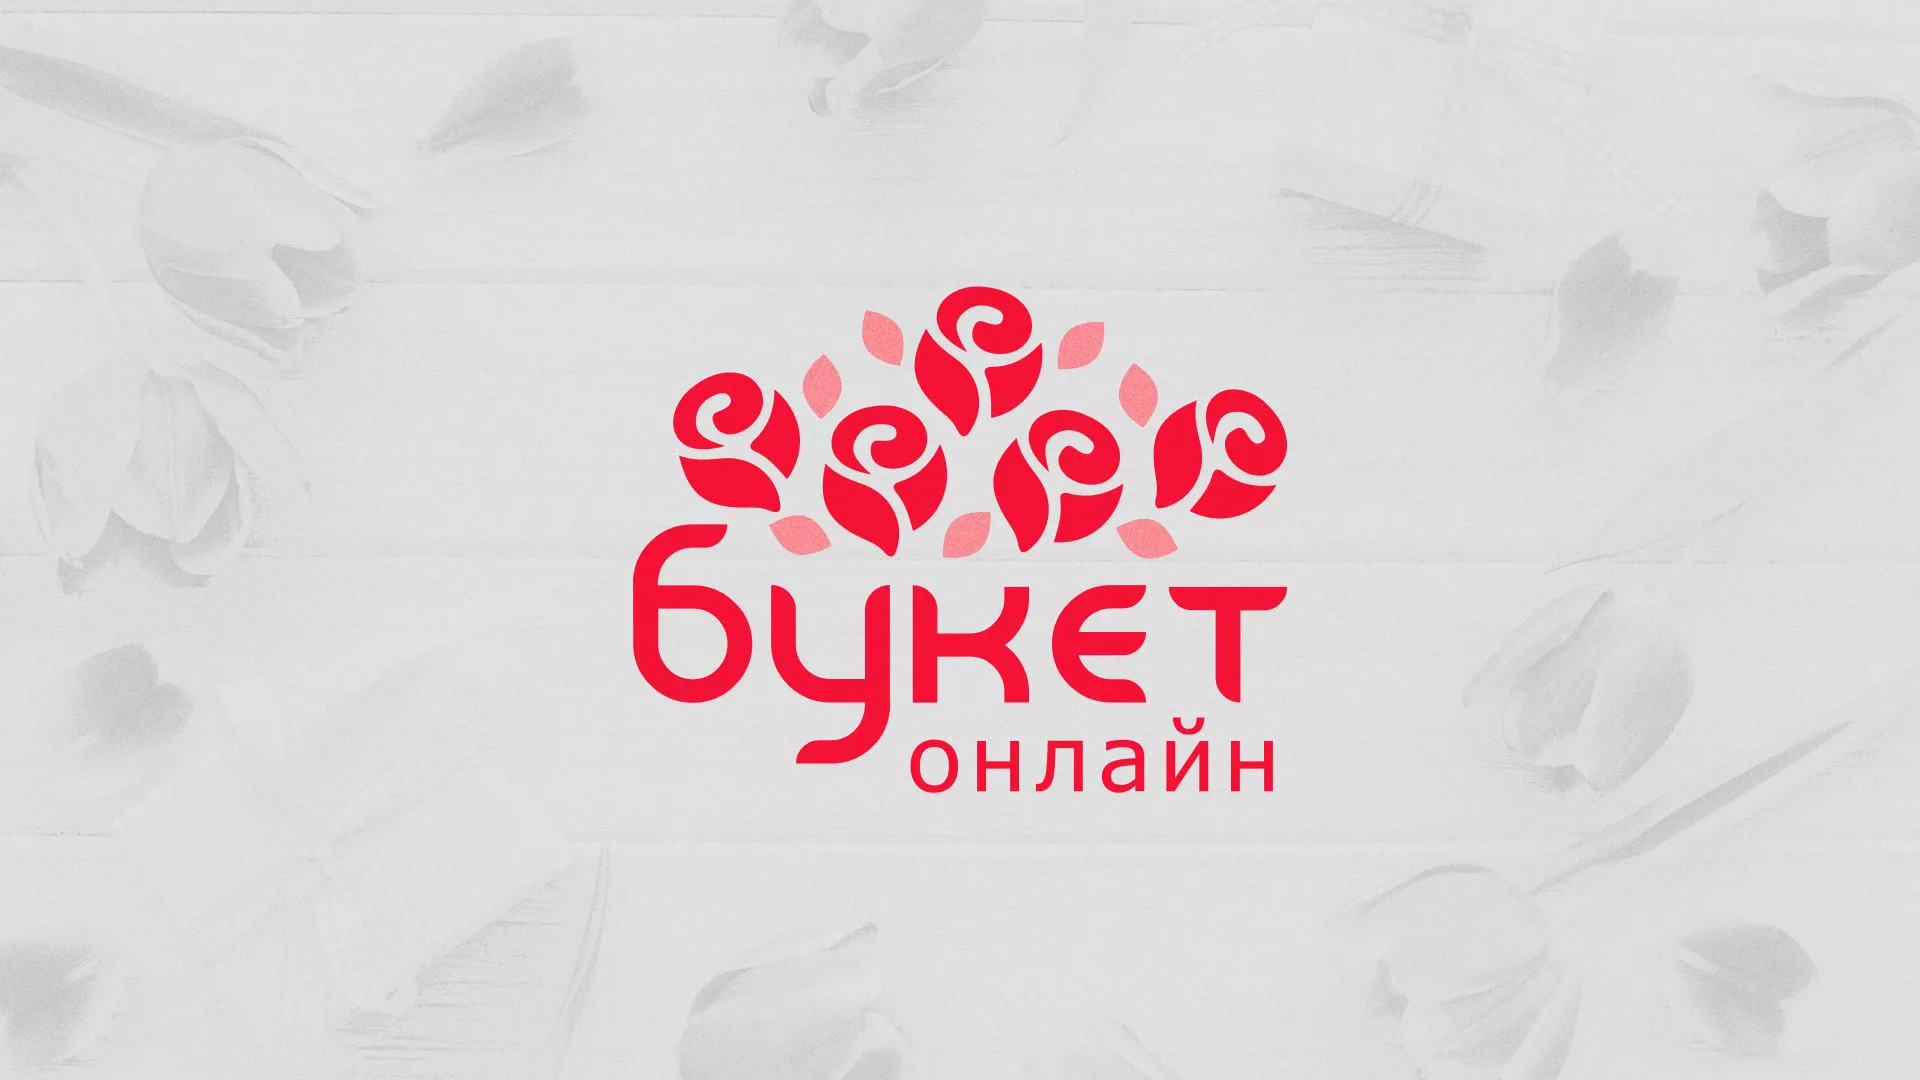 Создание интернет-магазина «Букет-онлайн» по цветам в Богородске